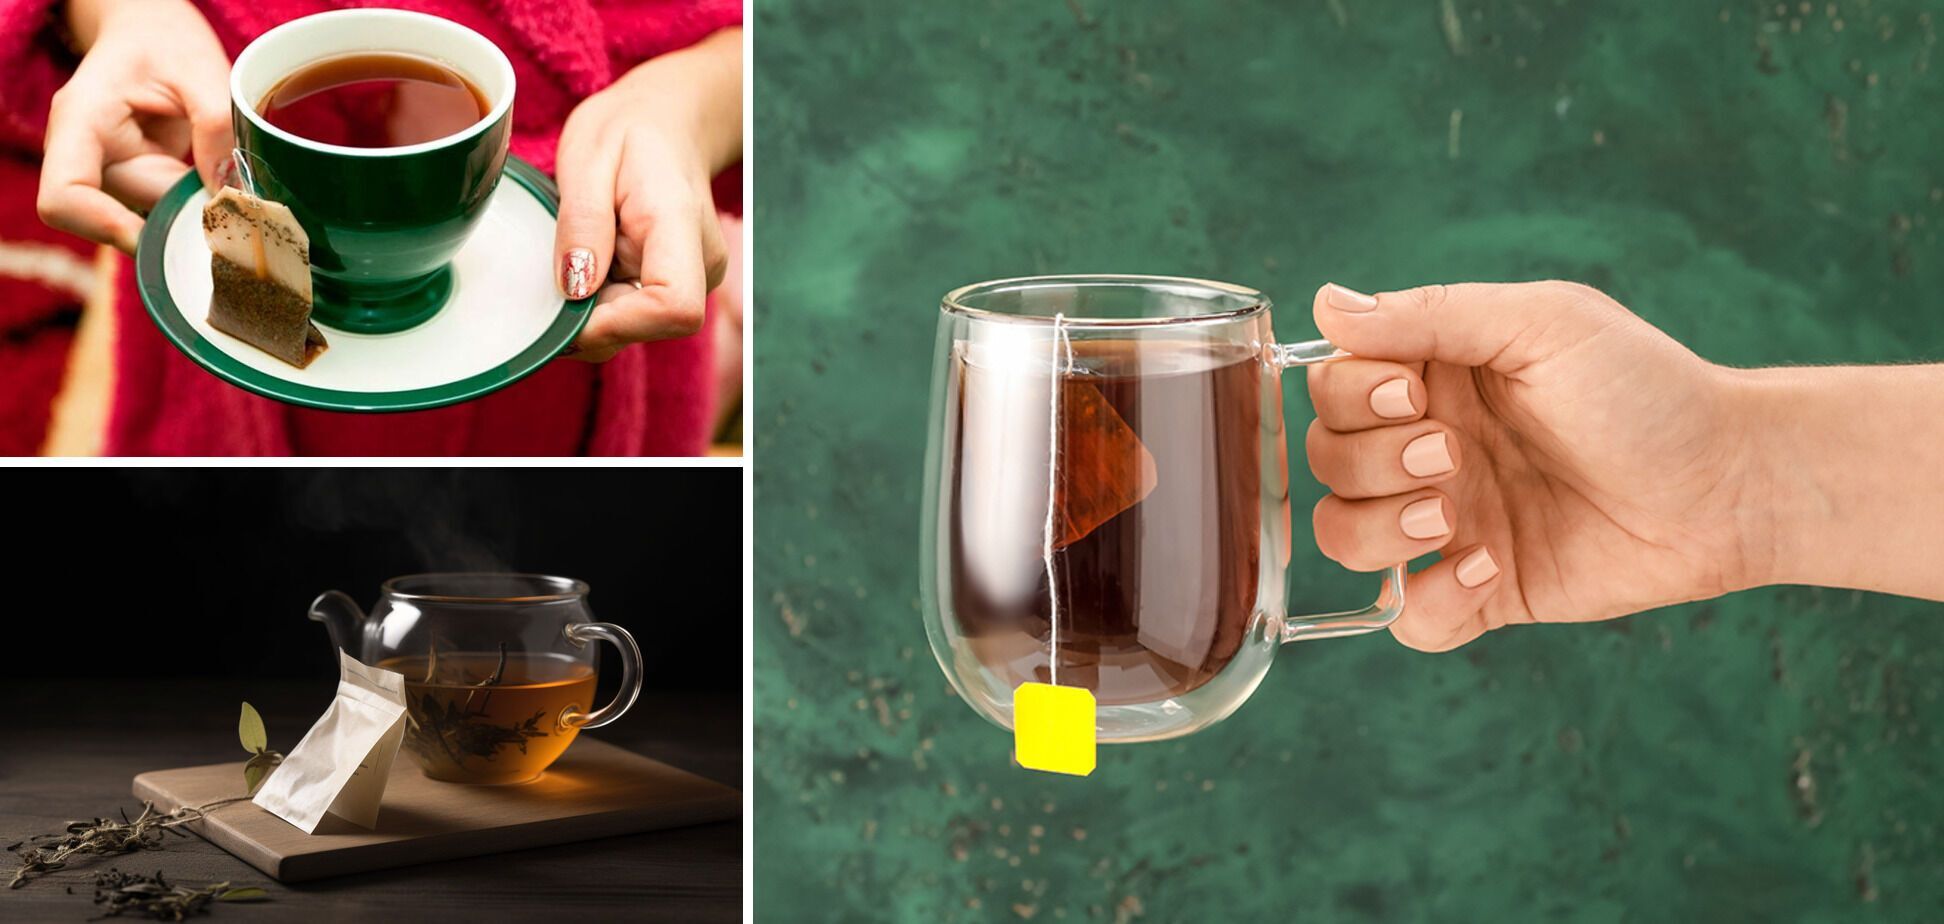 Źle parzysz herbatę: jak używać torebki herbaty i dlaczego nie należy jej ściskać